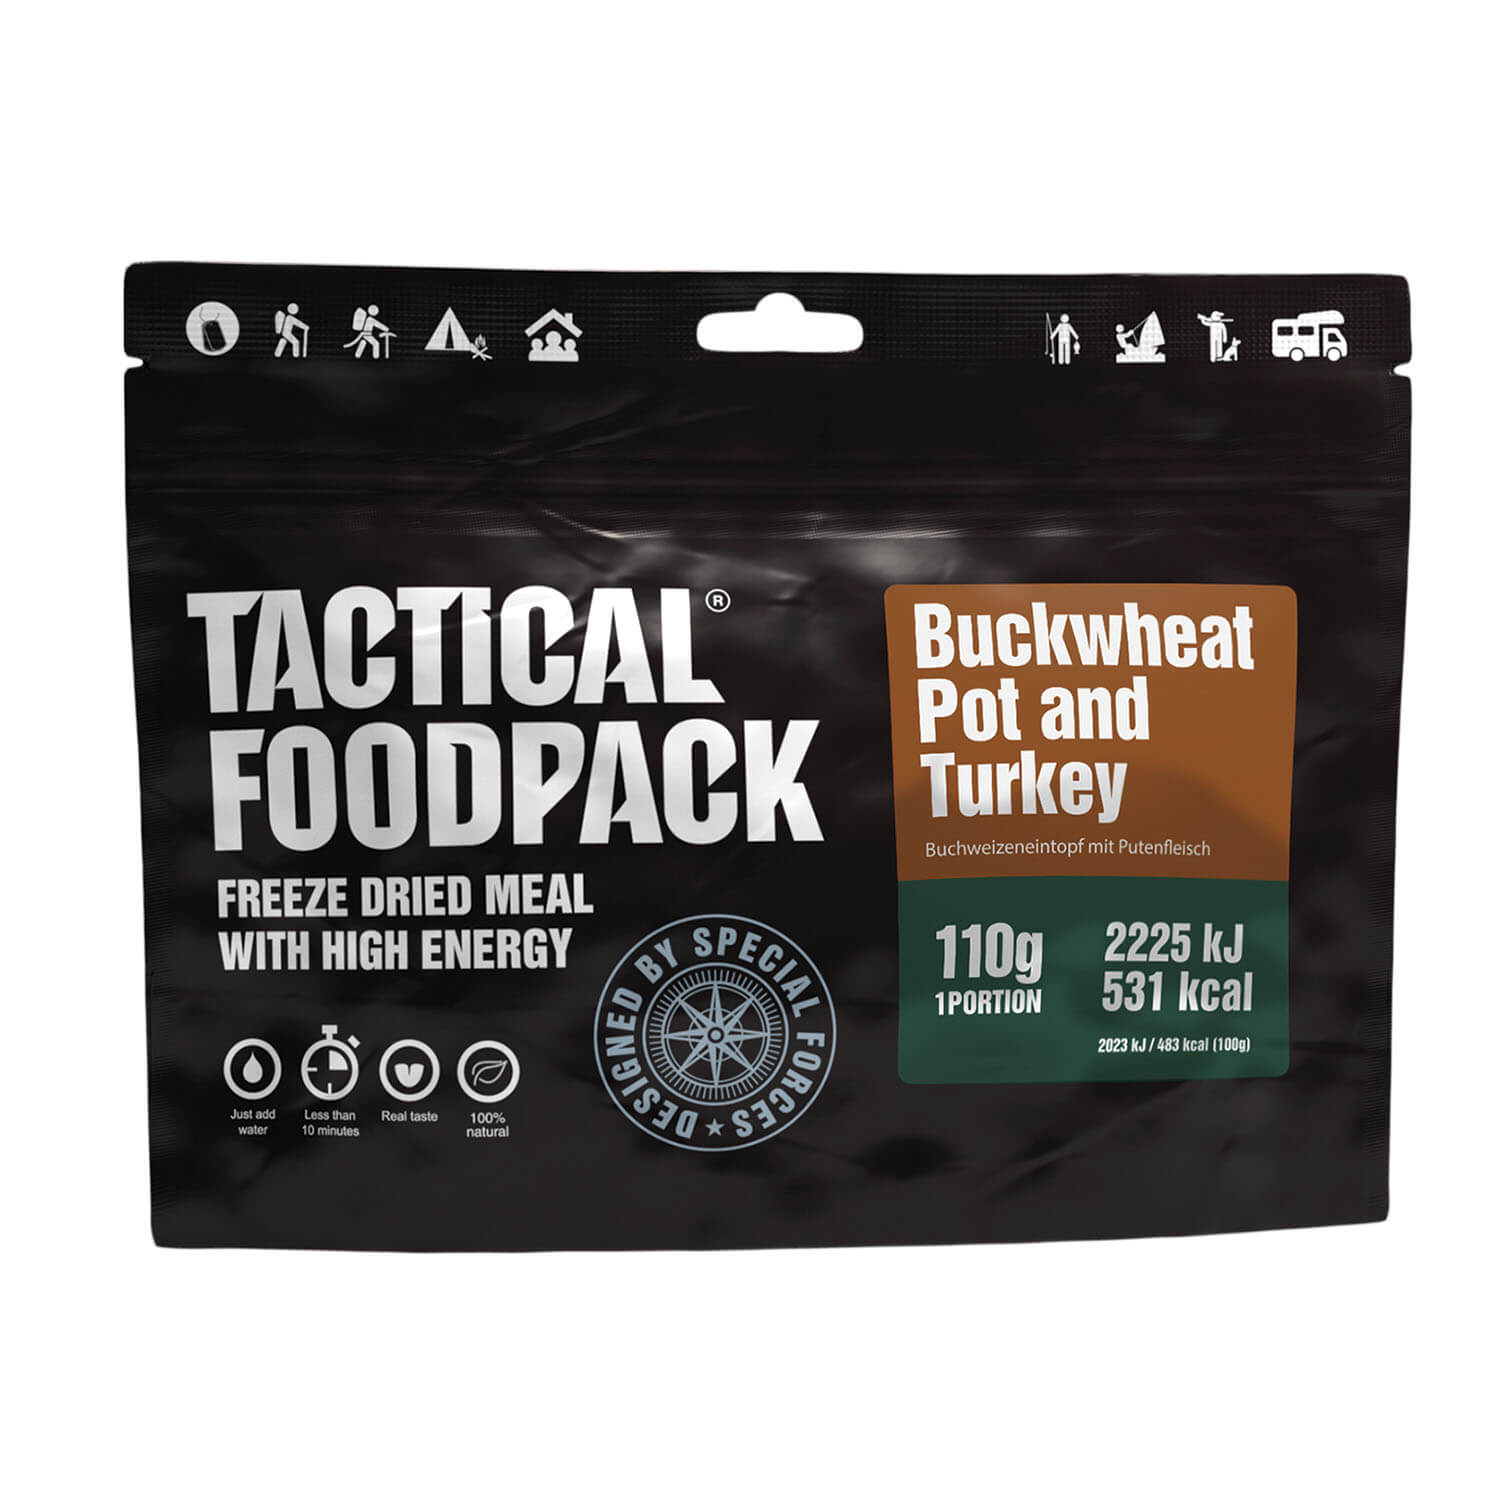 Tactical Foodpack Boekweitpot en Kalkoen - Buitenkoken